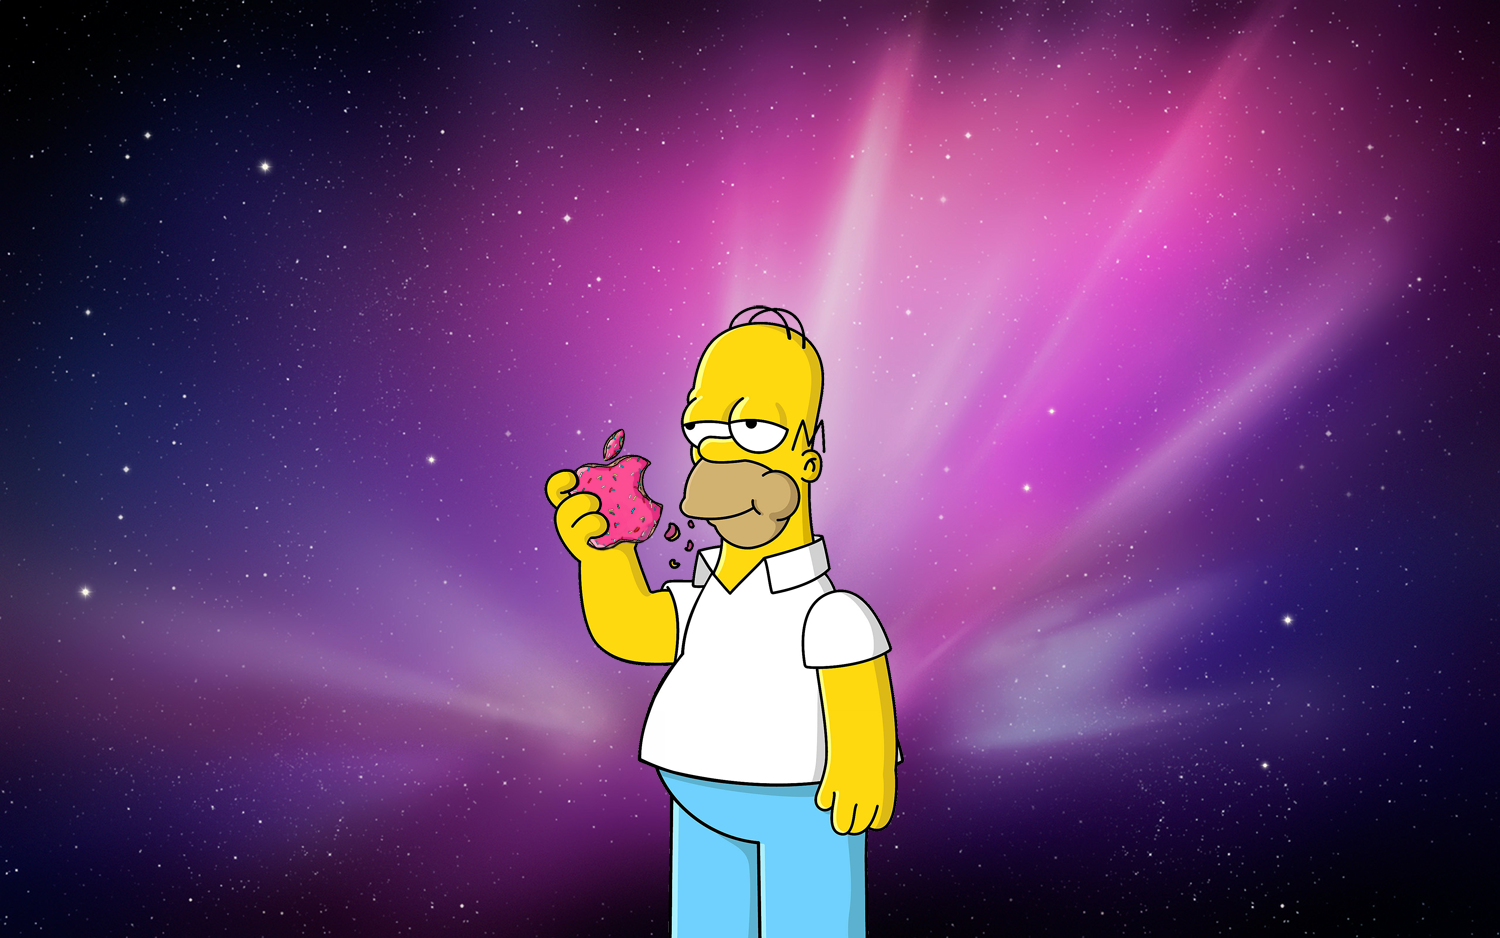 [66+] Homer Simpson Apple Wallpaper | WallpaperSafari.com